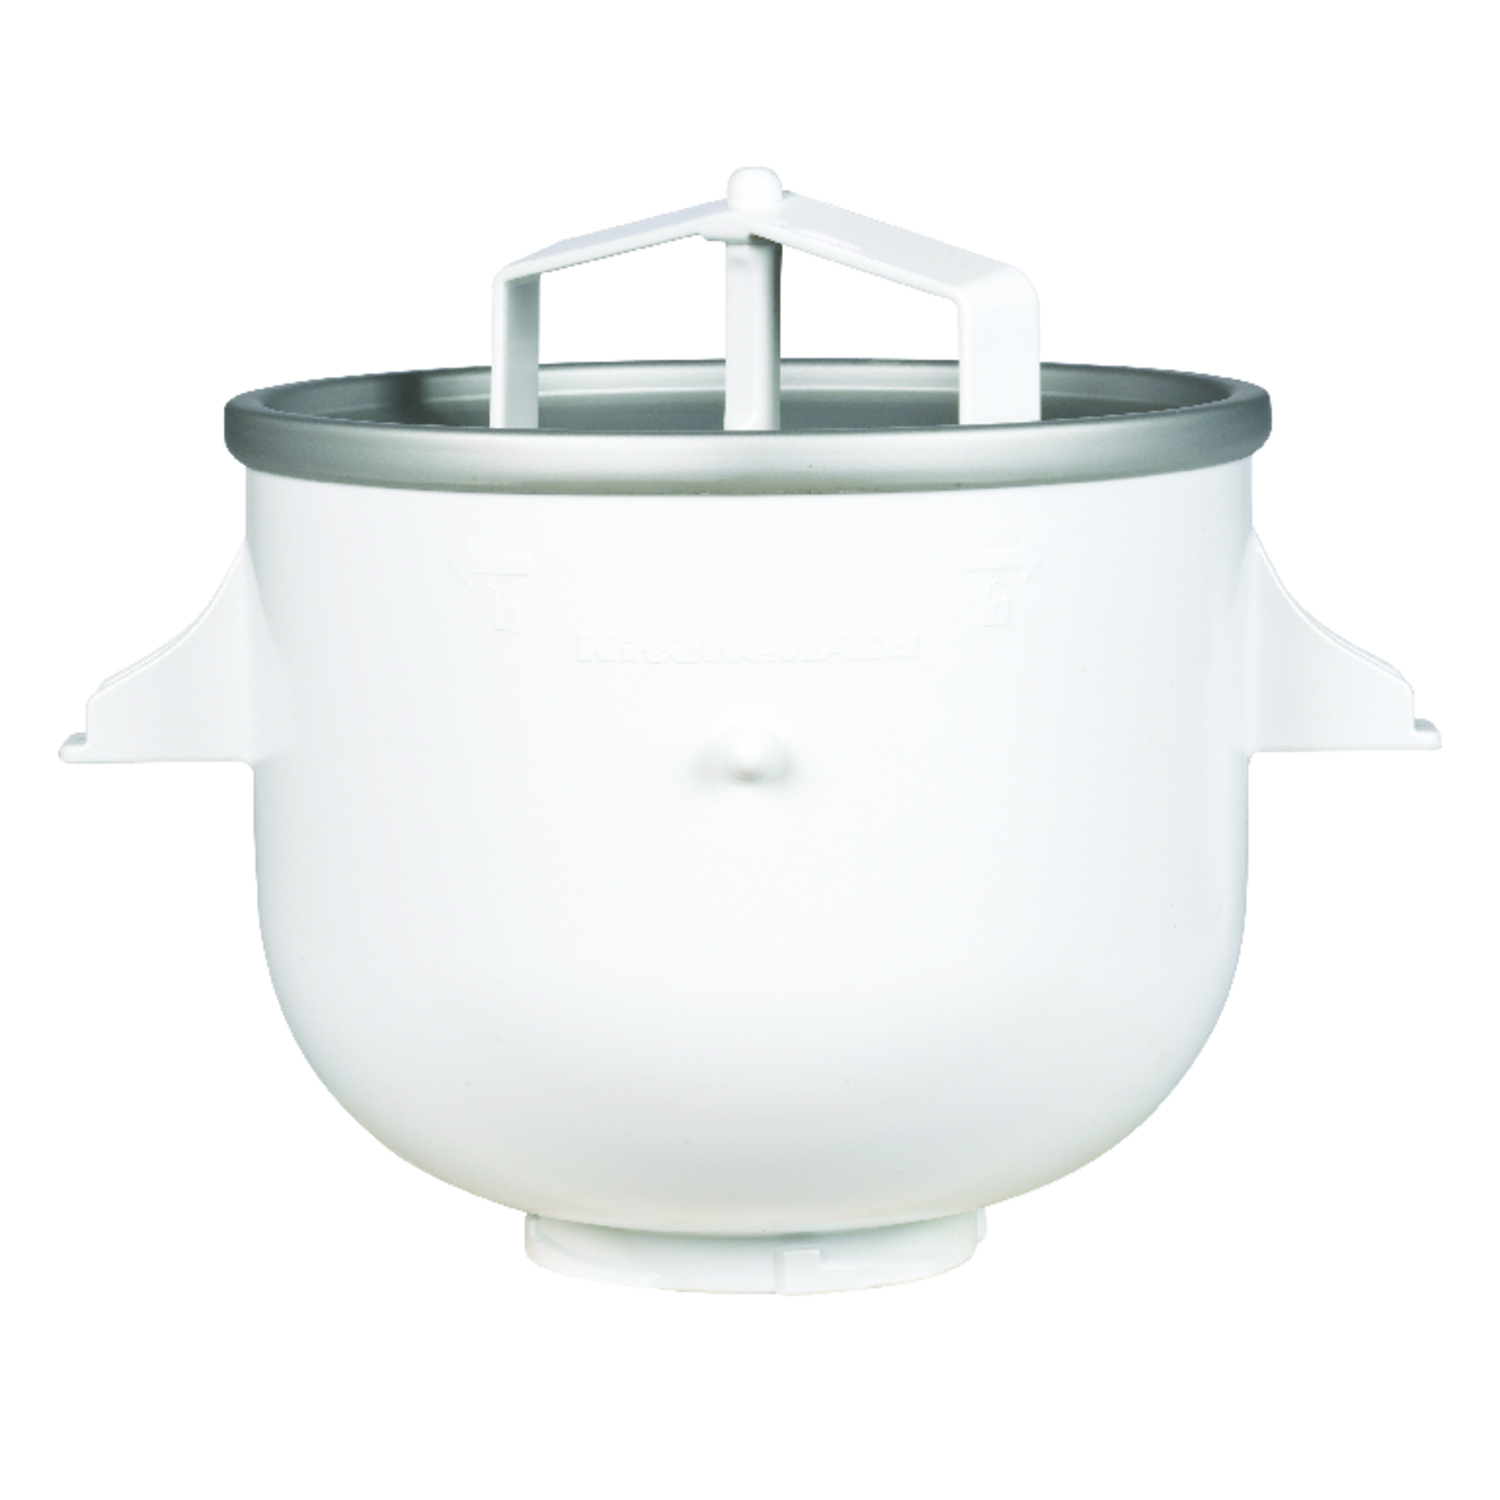 KitchenAid® Mixer Ice Cream Bowl Attachment for 5-qt Mixer